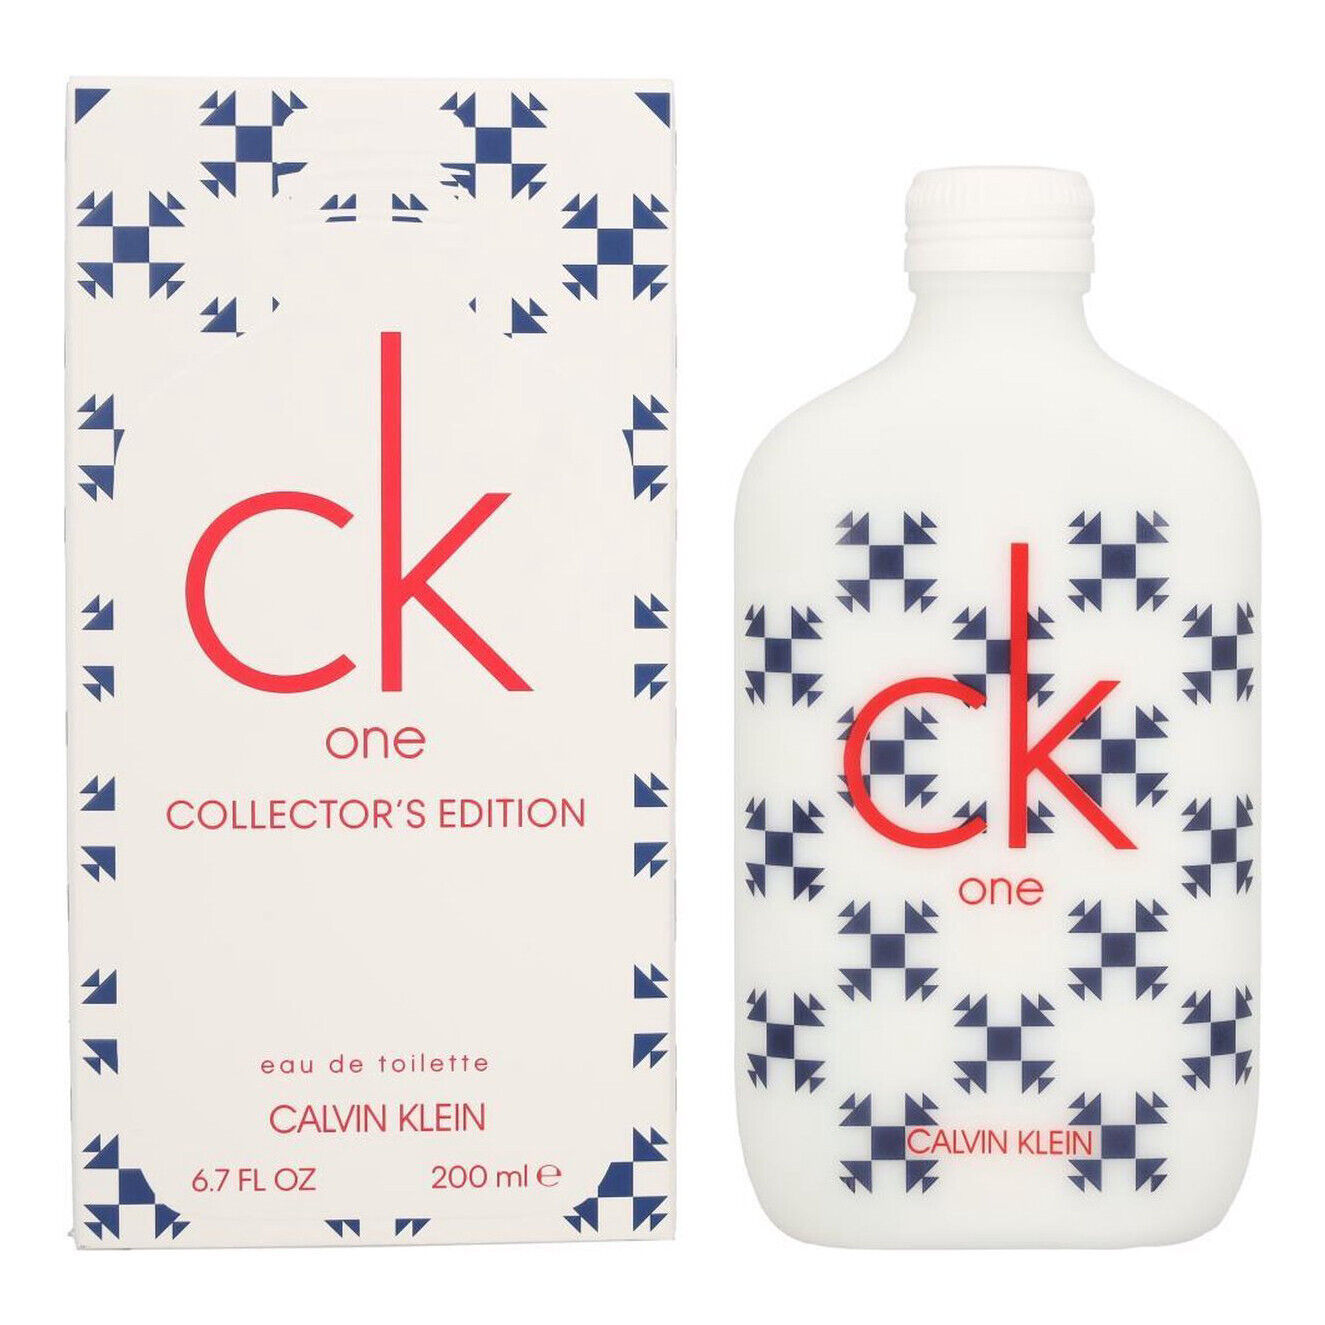 Ck One Collector's Edition by Calvin Klein 6.7 oz / 200 ml Eau De Toilette spray - $66.64